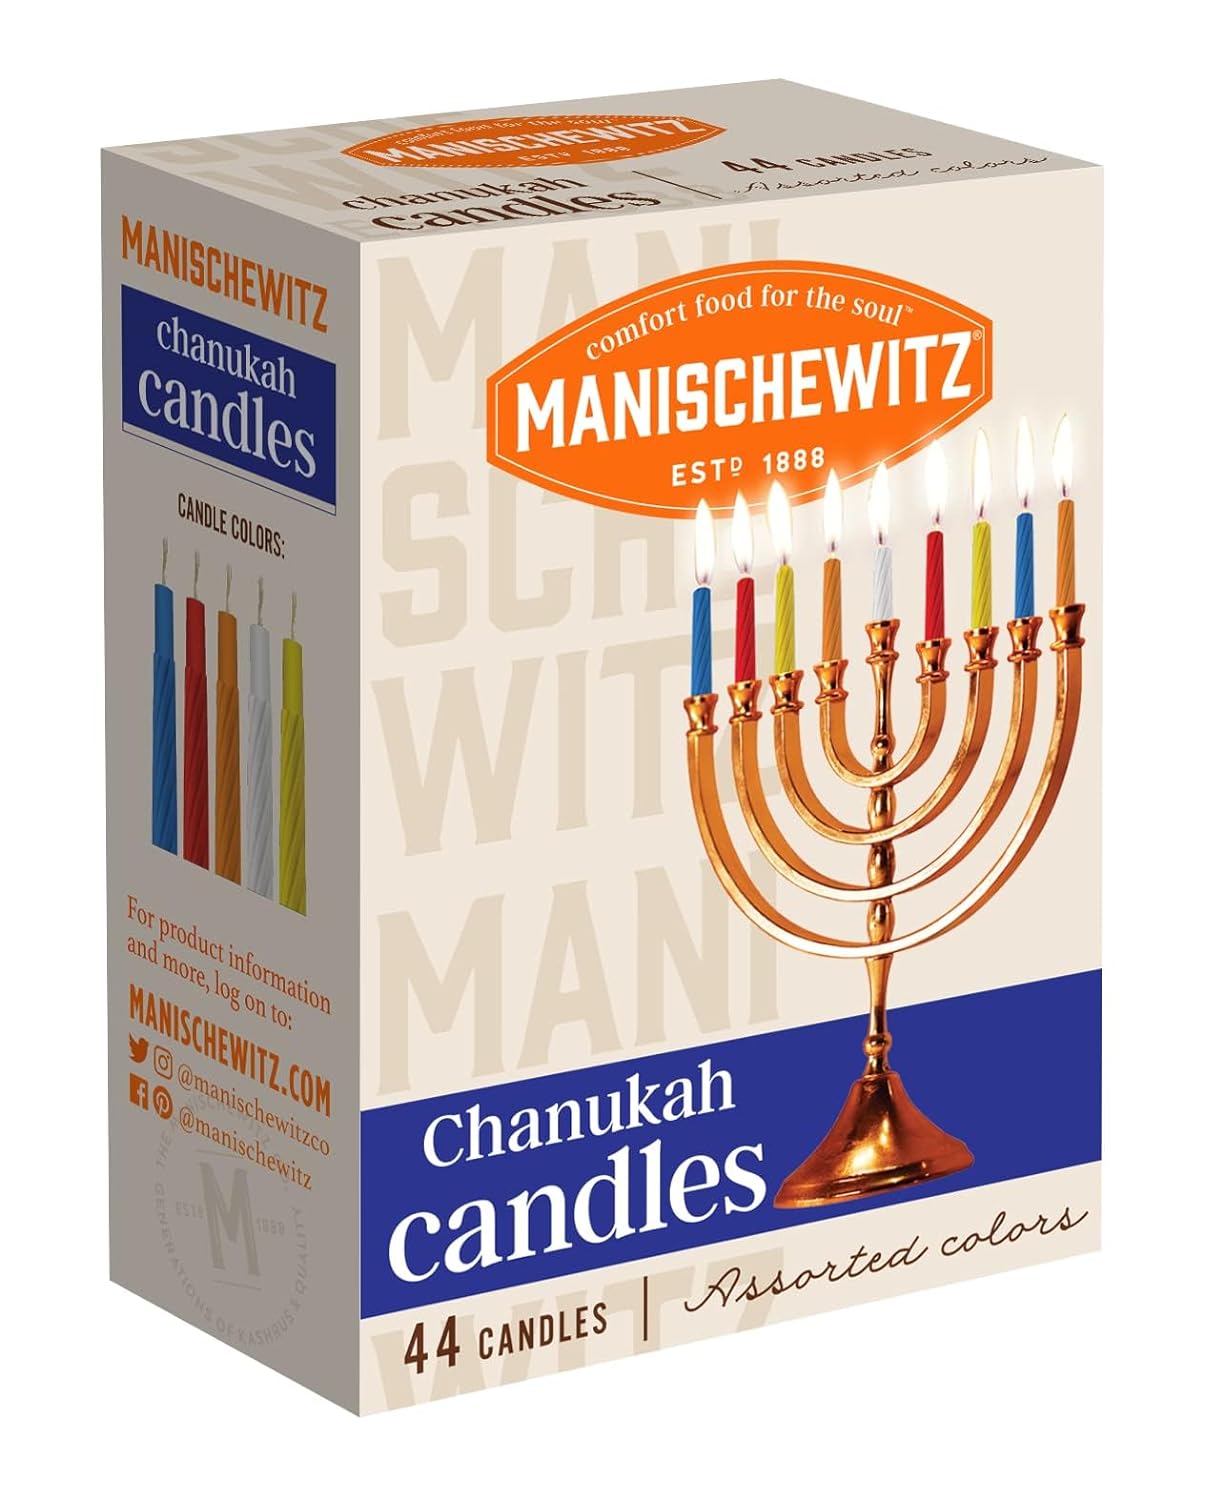 Manischewitz Chanukah Candles, 44 ct : Home & Kitchen